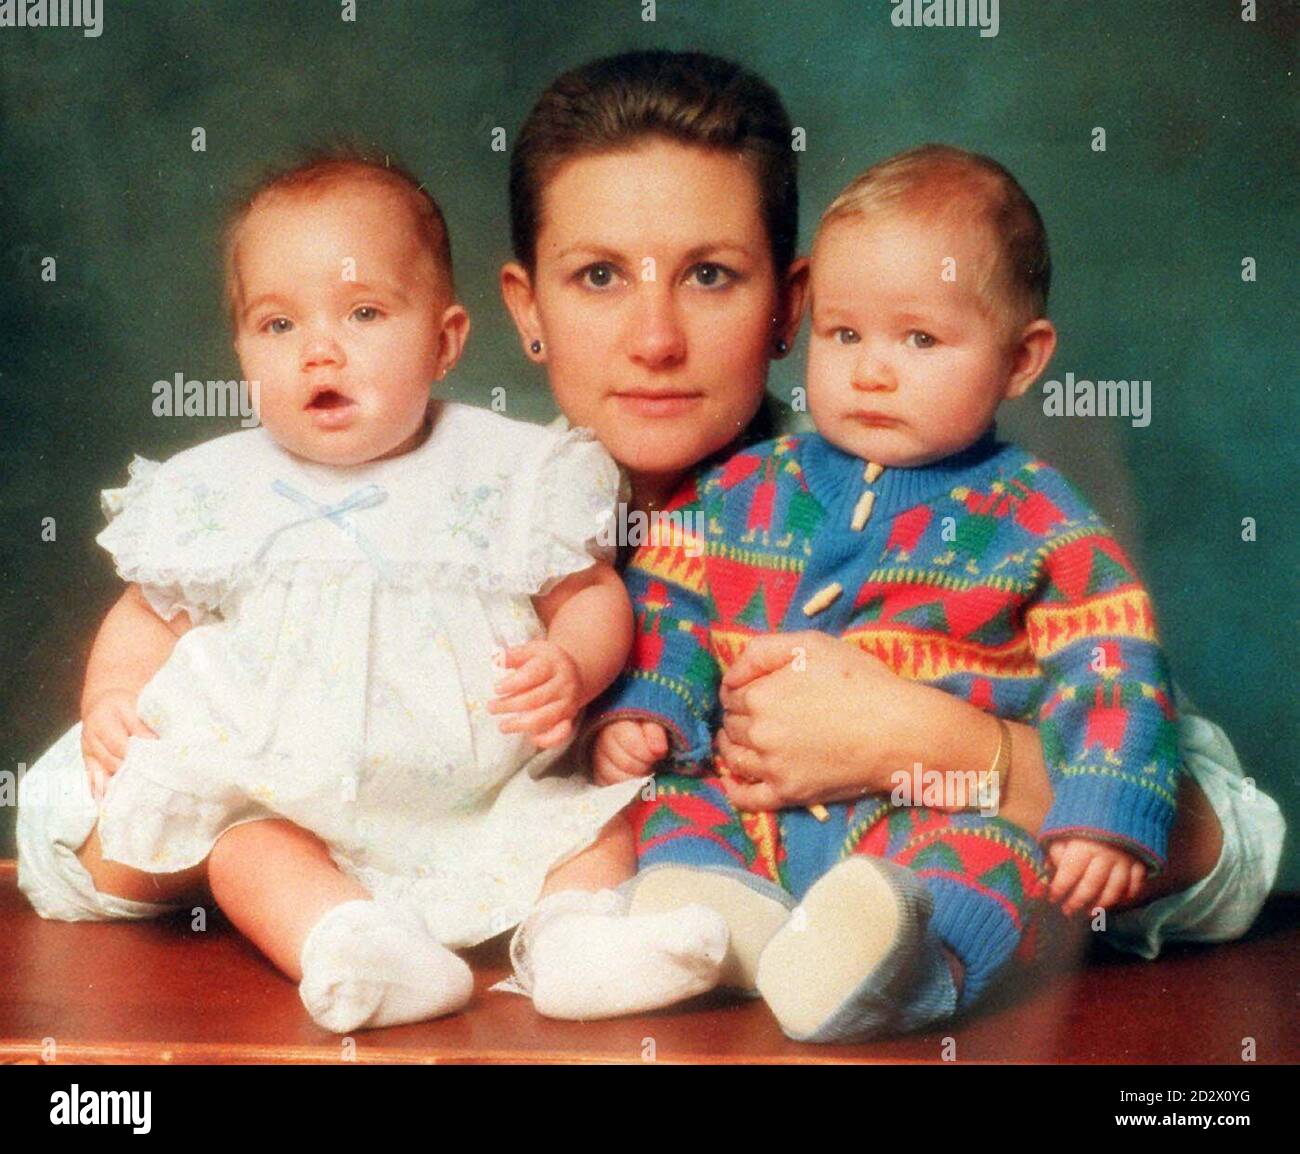 La mère porteuse Kim Cotton, avec les jumeaux qu'elle portait, s'appelle Alice et Oliver Nelson. Le coton, qui était la première mère porteuse britannique connue publiquement, a applaudi aujourd'hui (mardi) la décision d'offrir le service au NHS en disant que « la décision permettrait à beaucoup plus de copules infertiles de devenir parents ». Banque D'Images